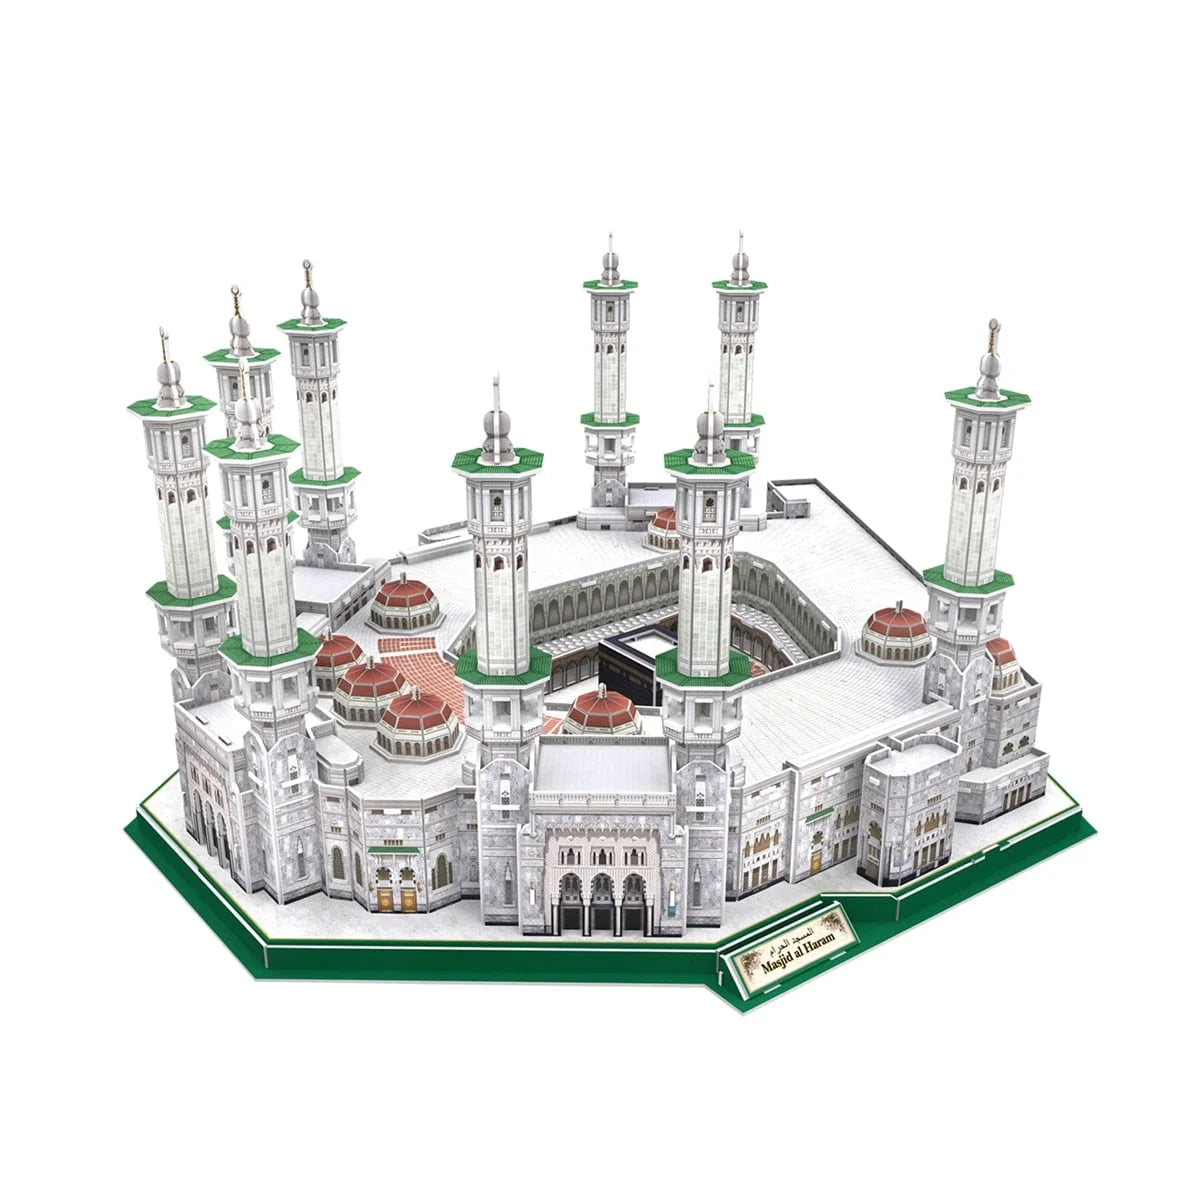 Cubic Fun Masjid Al Haram 3D Puzzle 249 Pieces